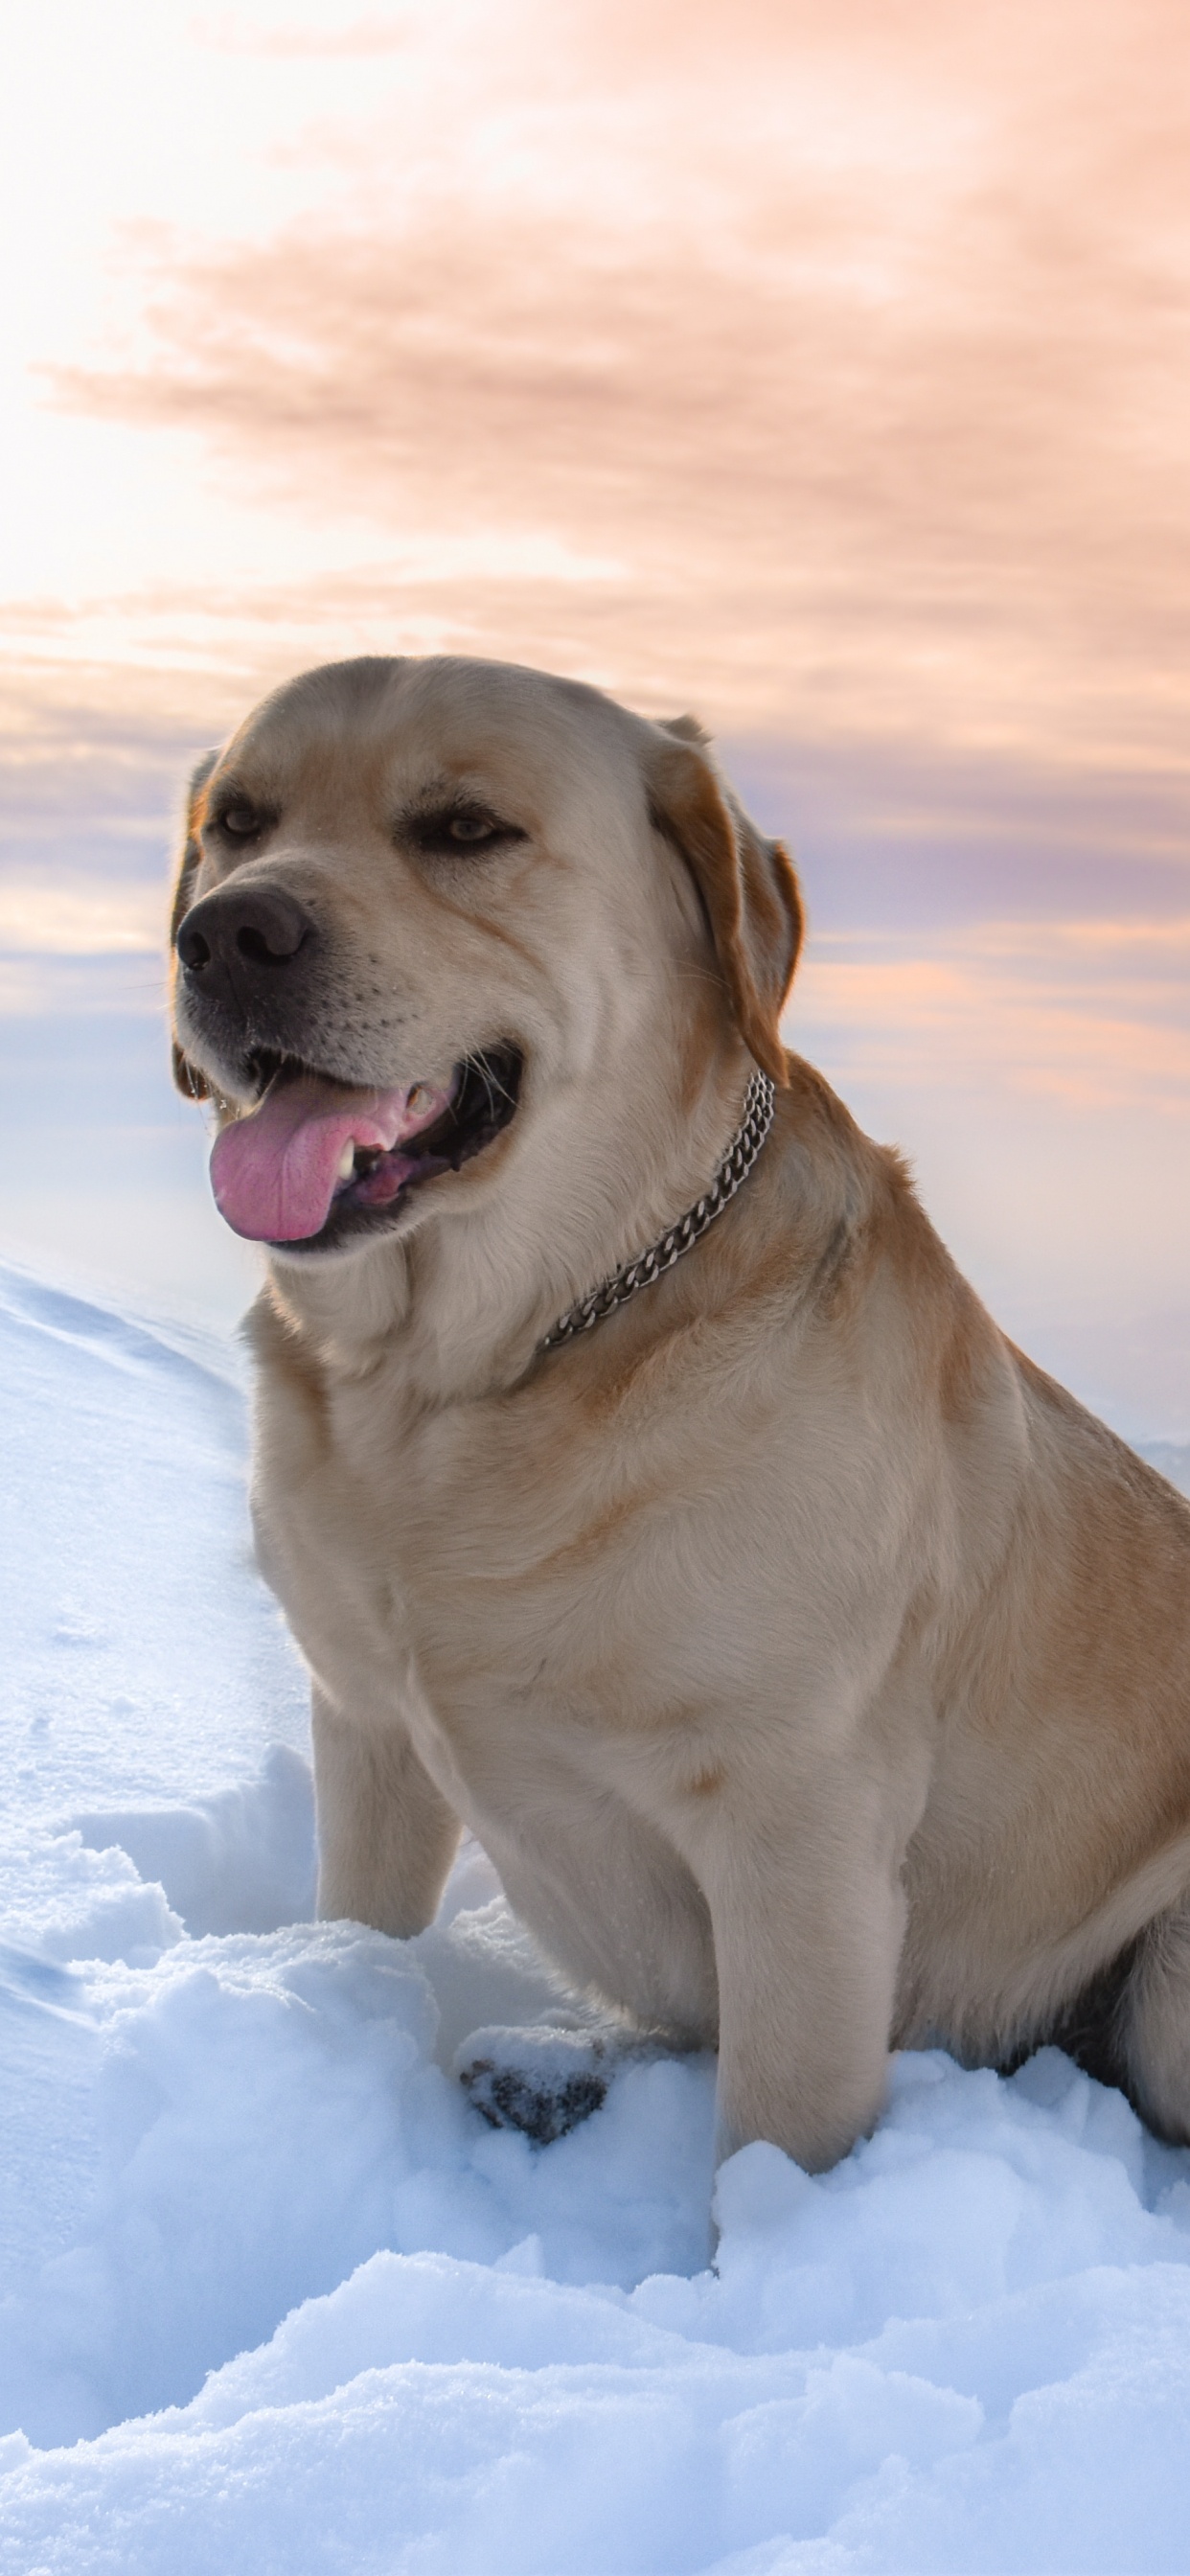 拉布拉多犬, 品种的狗, 黄金猎犬, 狗喜欢哺乳动物, 顶级掠食者 壁纸 1242x2688 允许